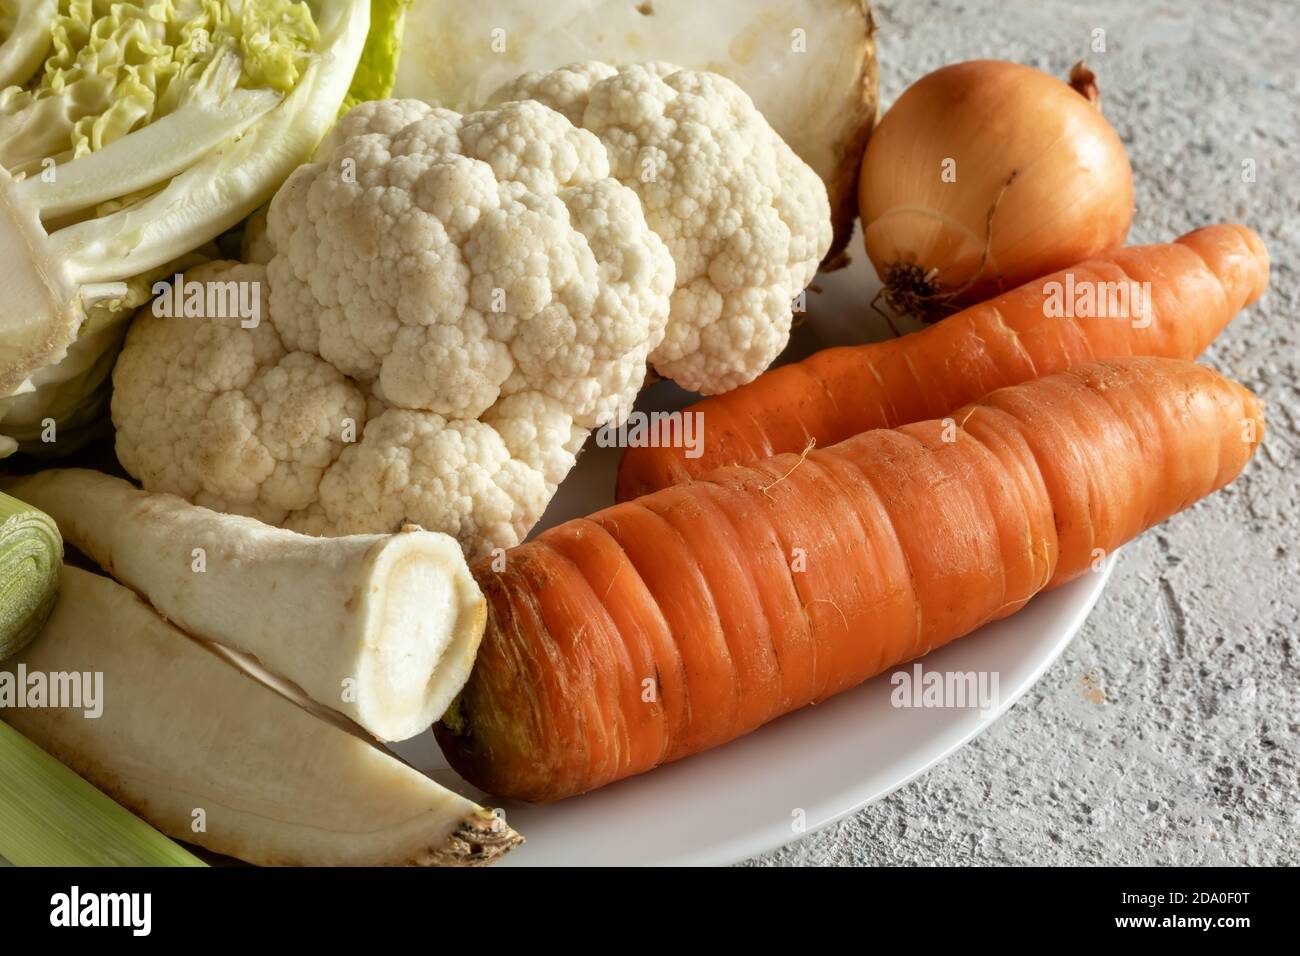 Primi piatti di carote, cavolfiore, radice di prezzemolo e altri ingredienti per preparare un brodo vegetale o una zuppa Foto Stock